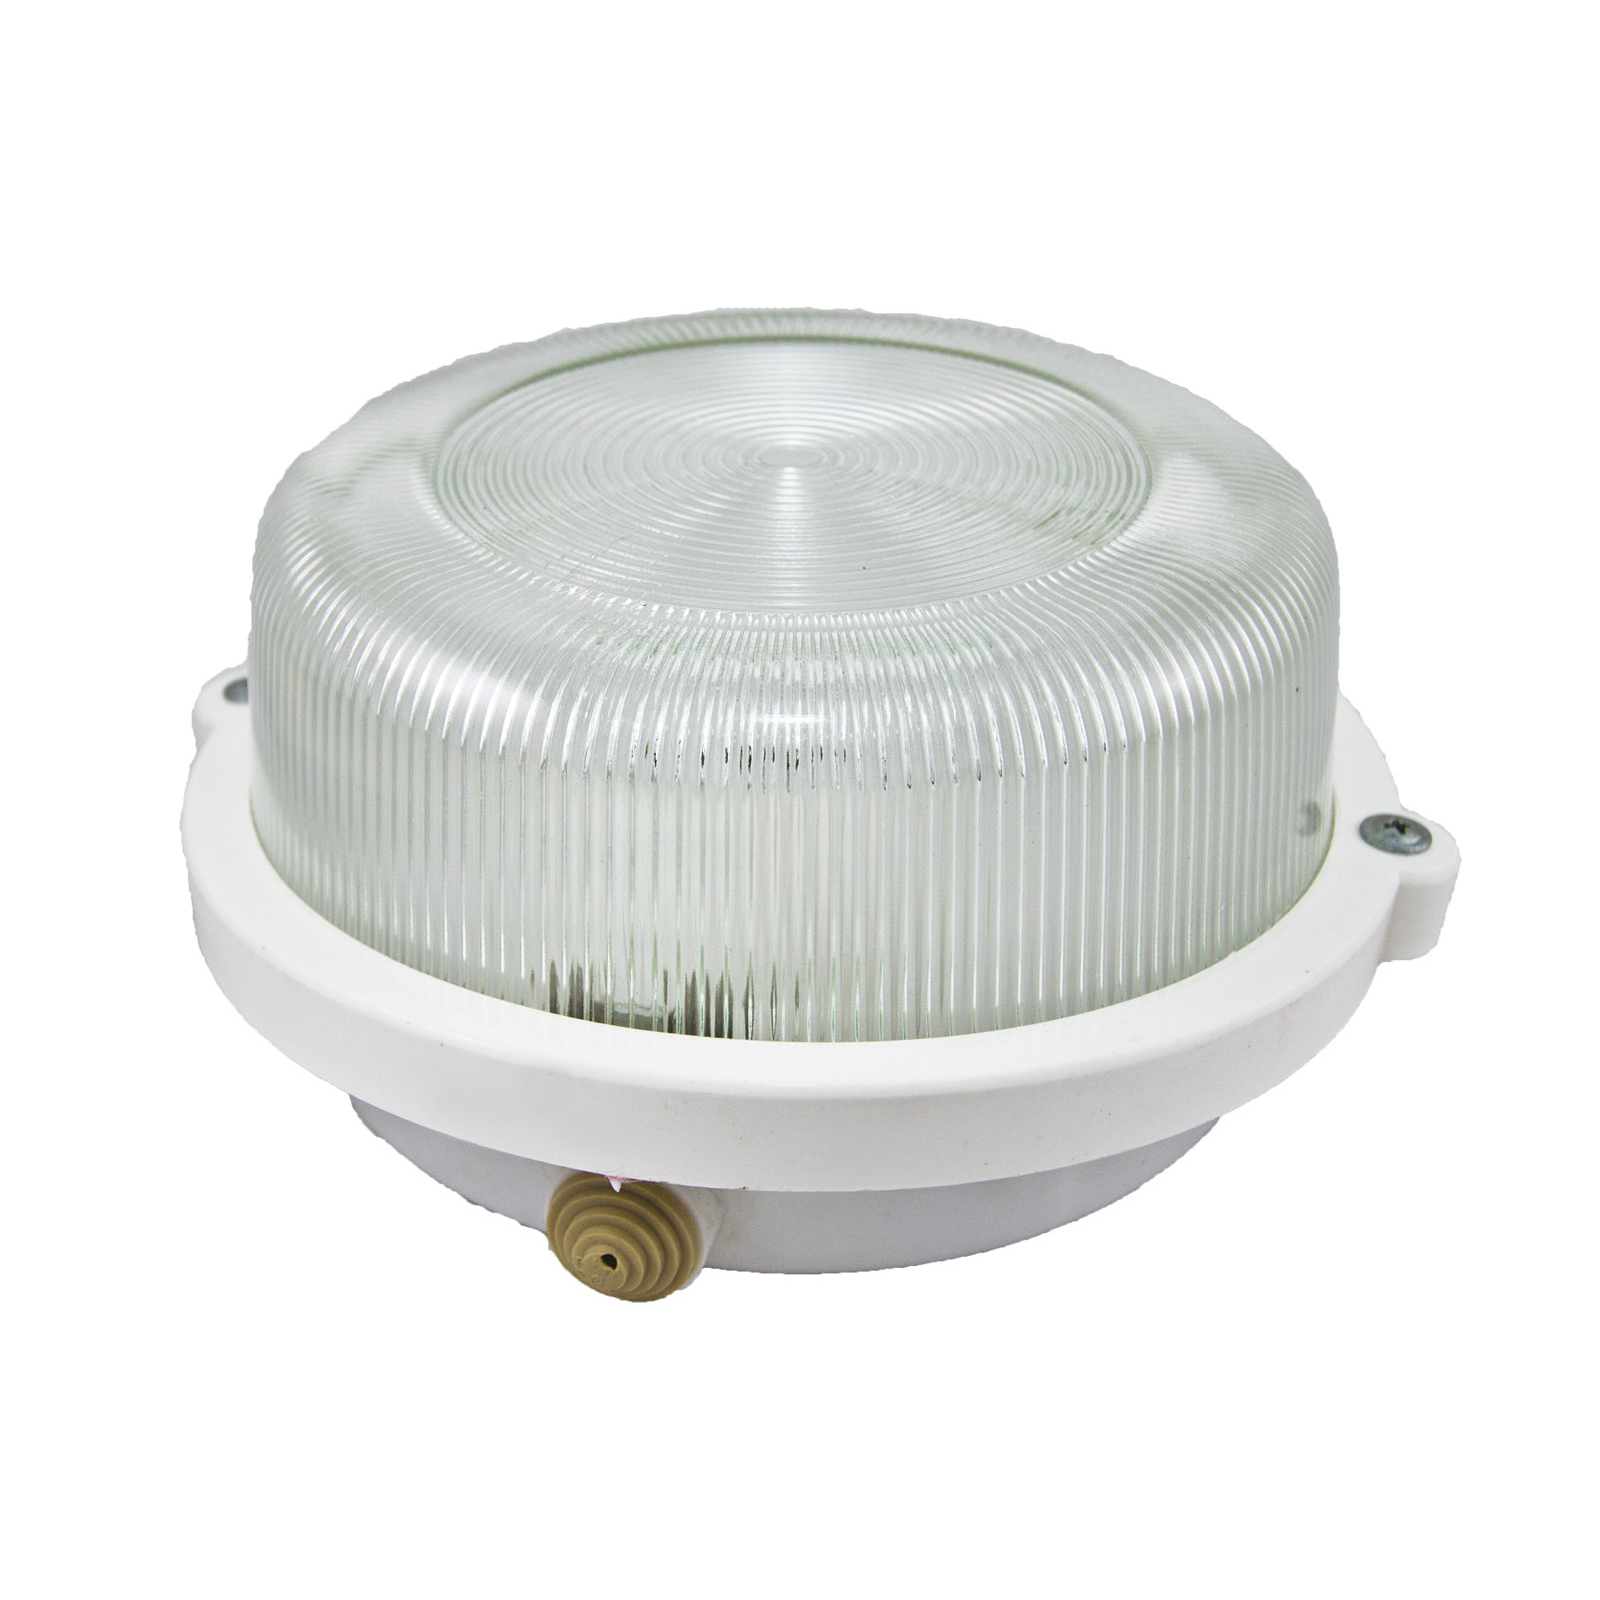 Потолочный светильник НПП 03-100-005.03 У3 корпус с обручем без защитной решетки, белый,